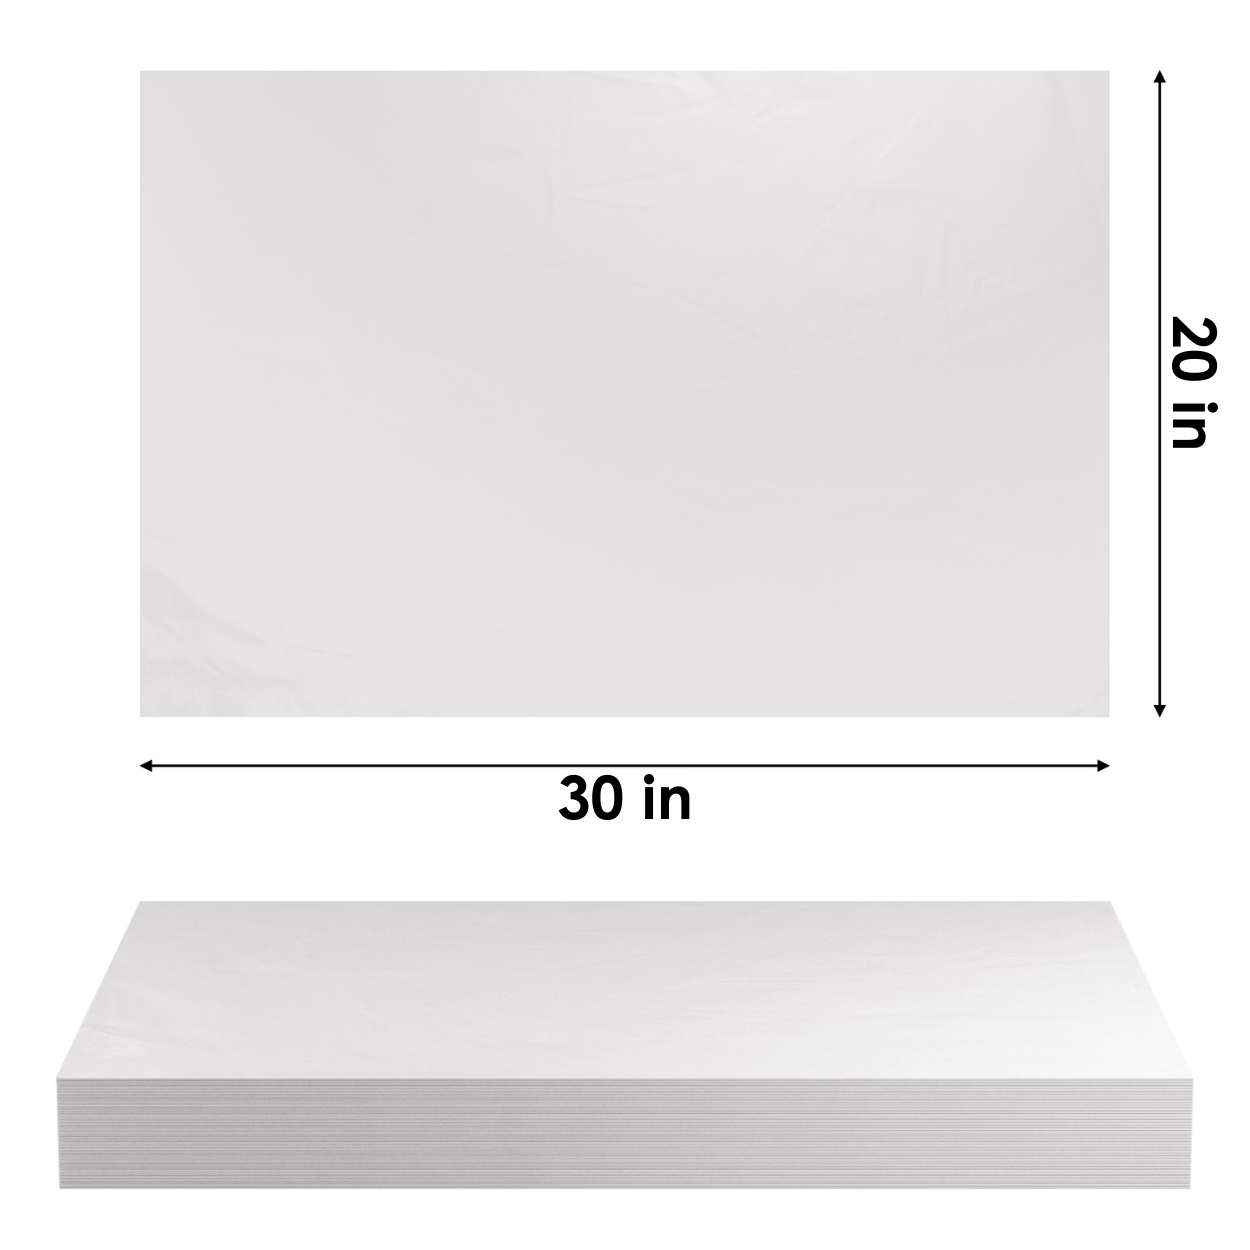  DUICIRX White Tissue Paper Bulk, 100 Sheets 27X17